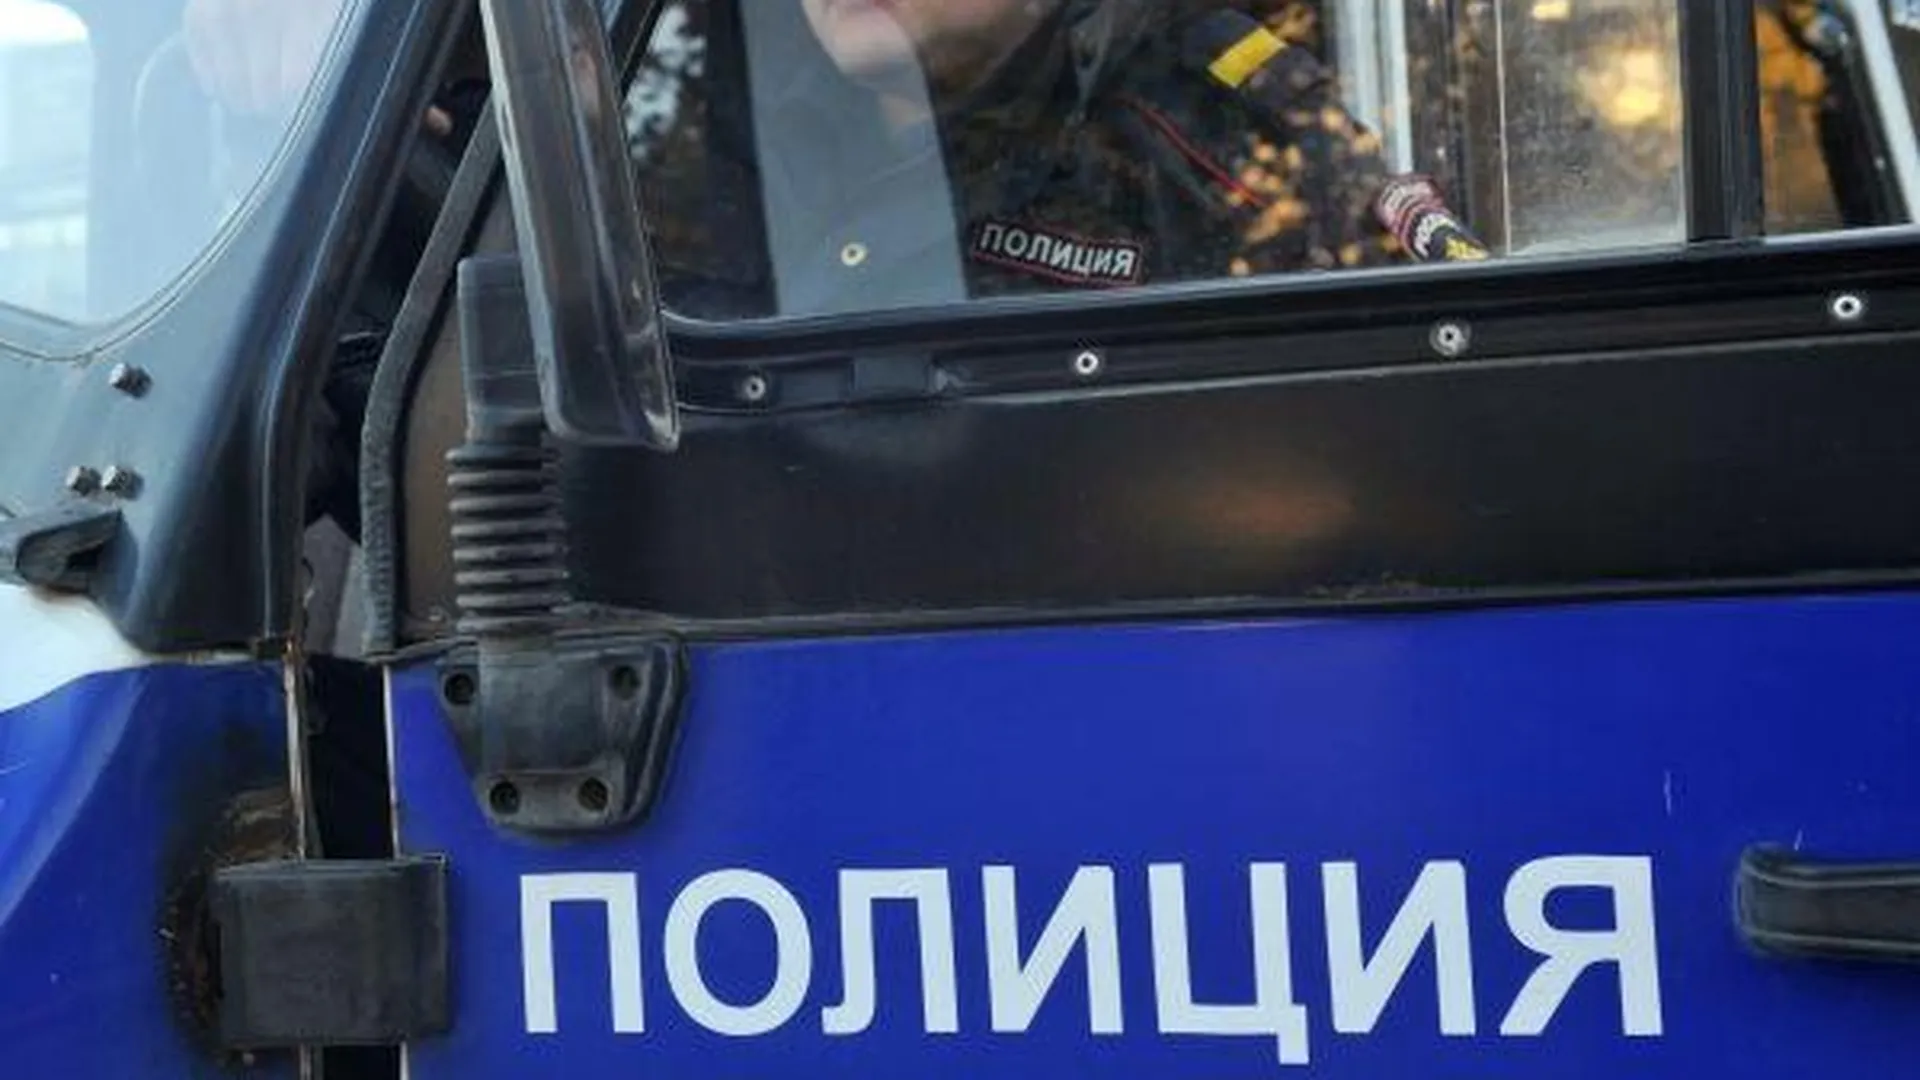 Жителя Одинцово задержали за незаконное хранение оружия